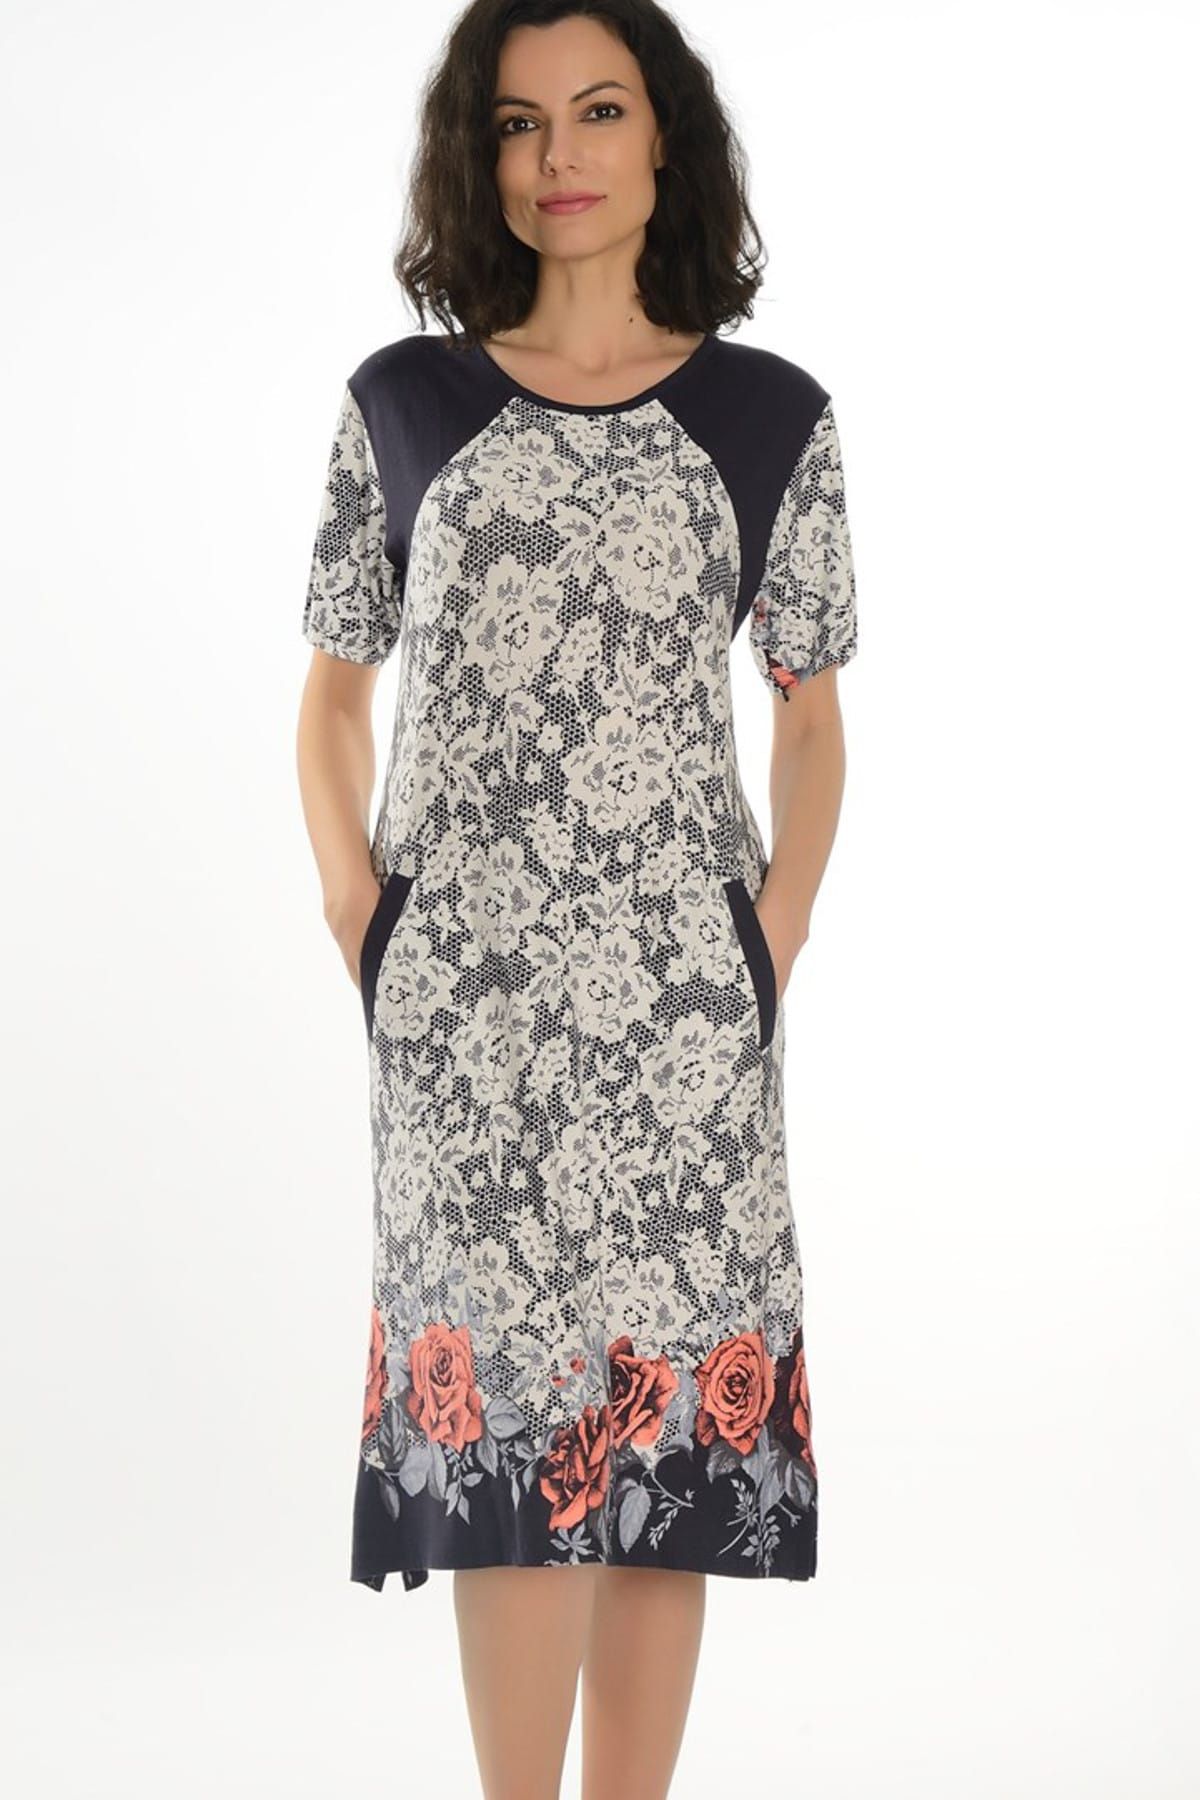 Dükkan Moda Kadın Çok Renkli Büyük Beden Çiçek Desenli Elbise C1067030